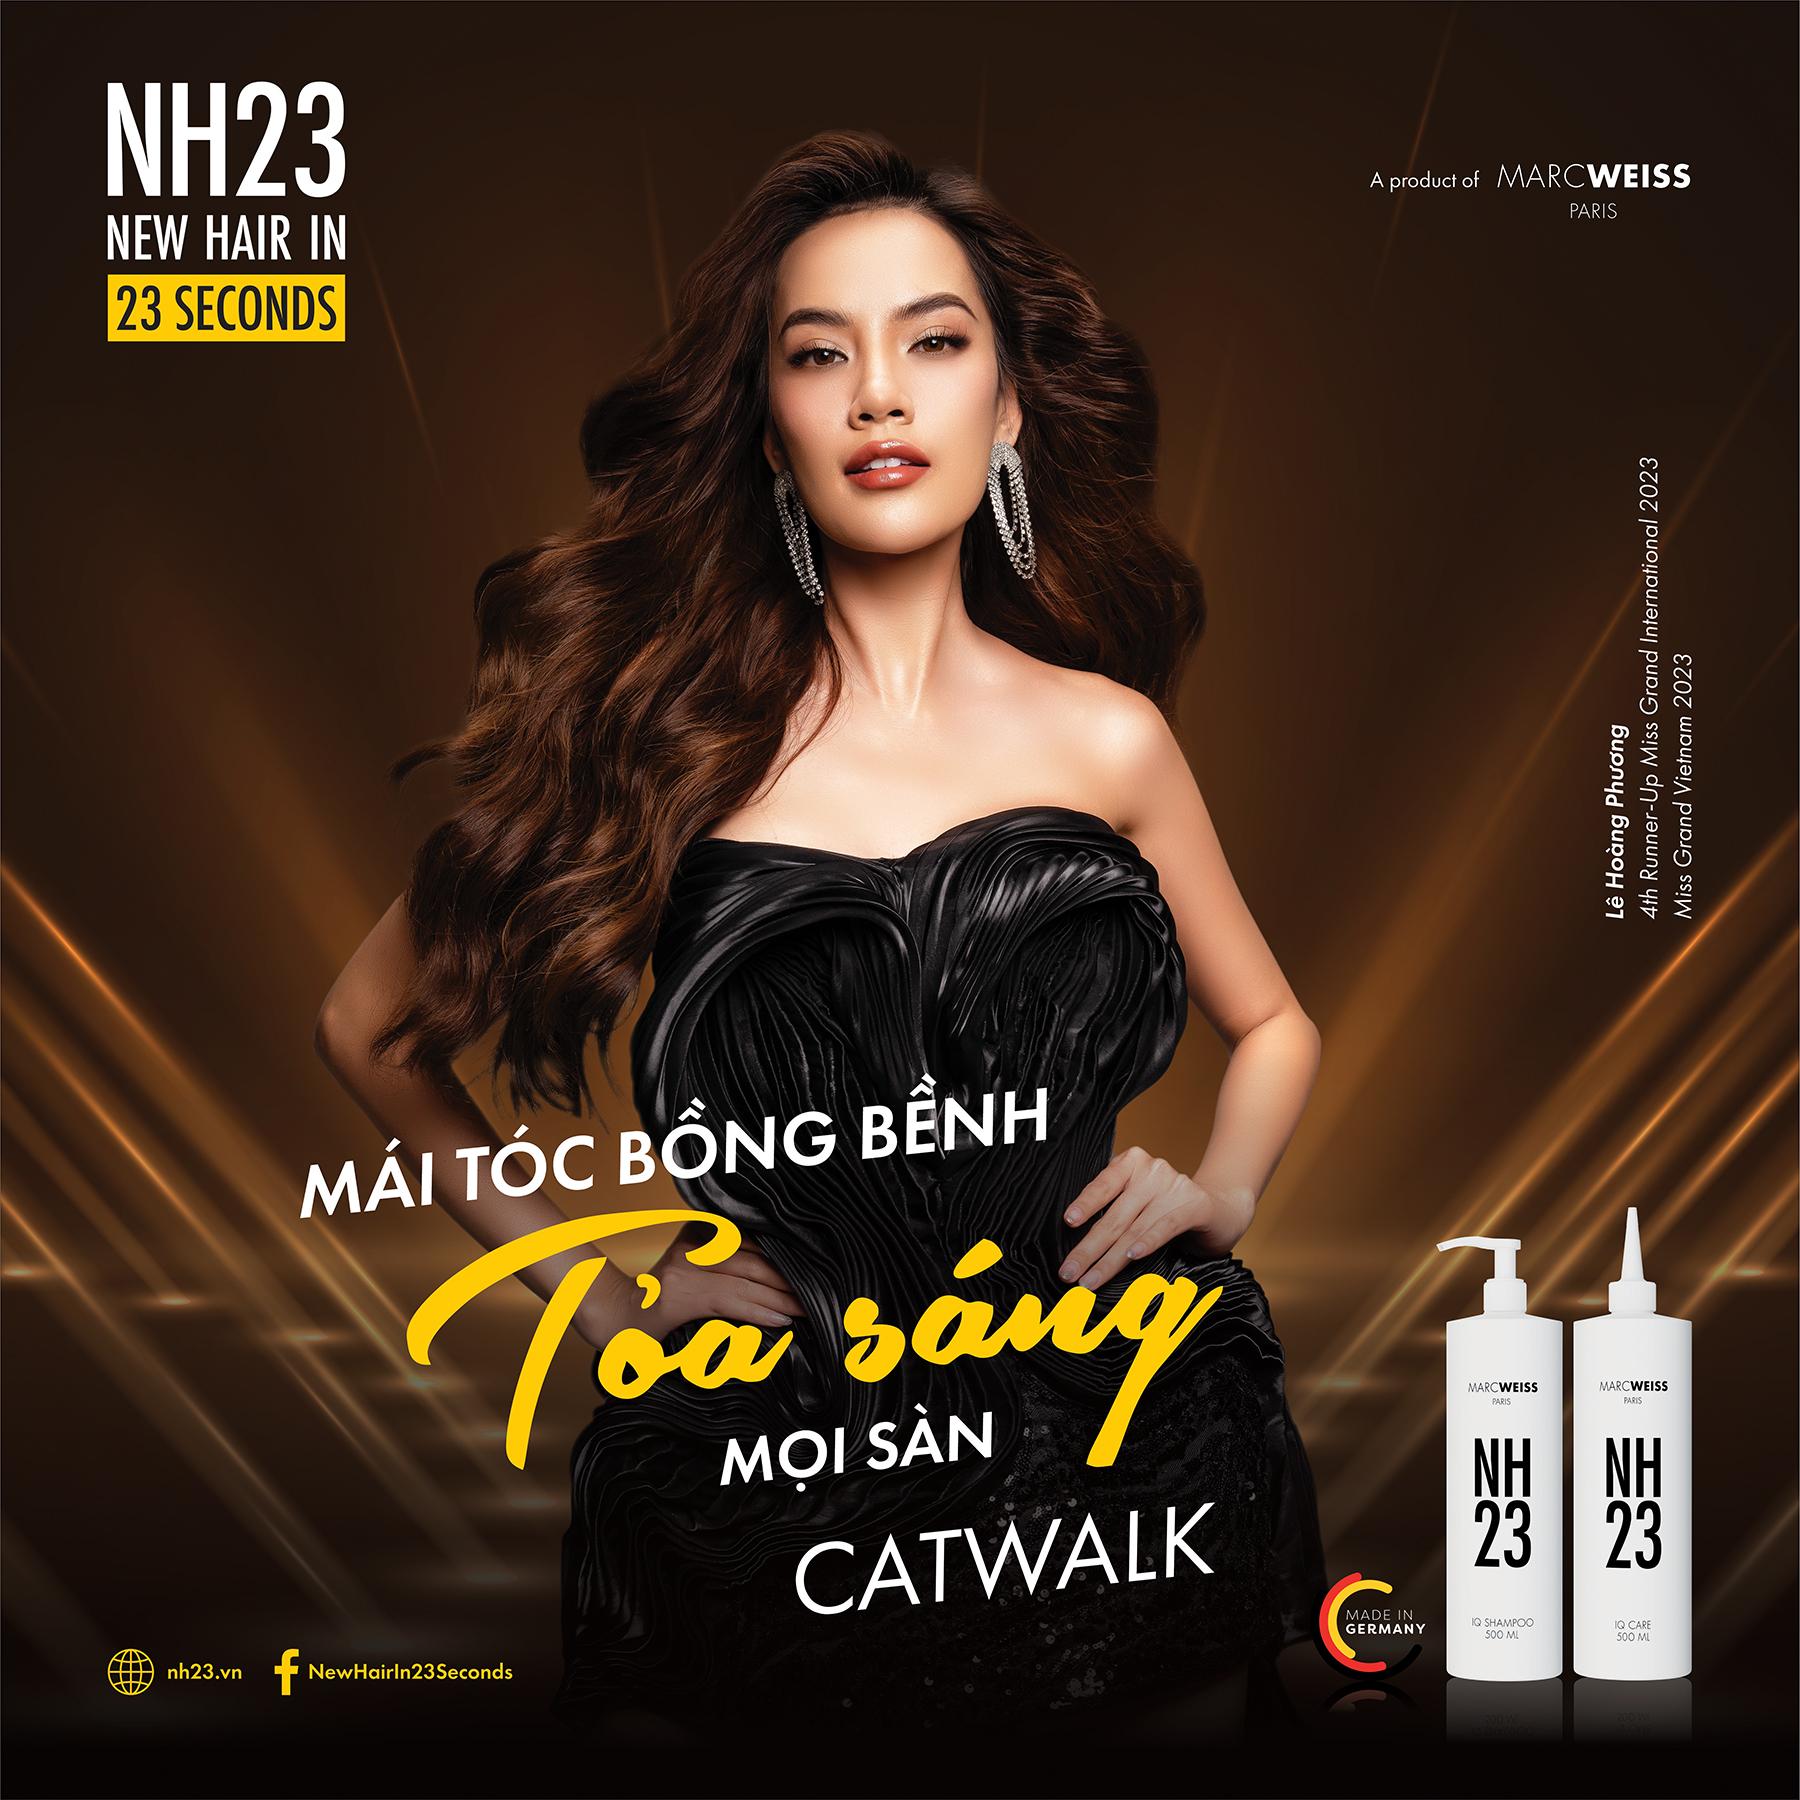 NH23 - Bí quyết mái tóc bồng bềnh, bừng sáng mọi sân khấu của Hoa hậu Lê Hoàng Phương - Ảnh 1.